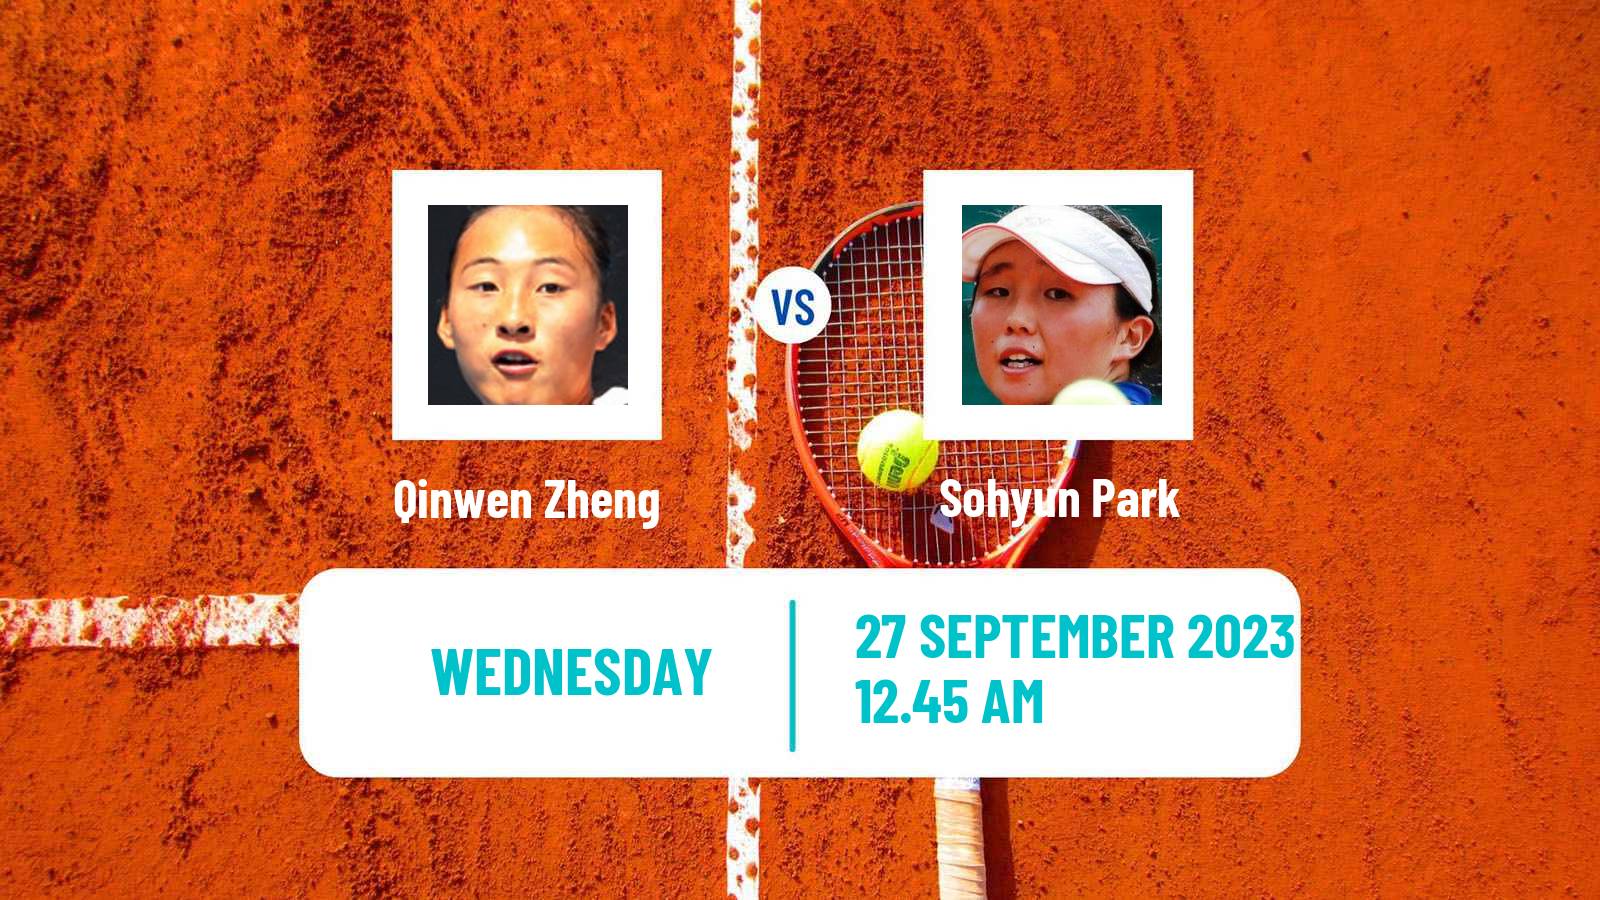 Tennis WTA Asian Games Qinwen Zheng - Sohyun Park